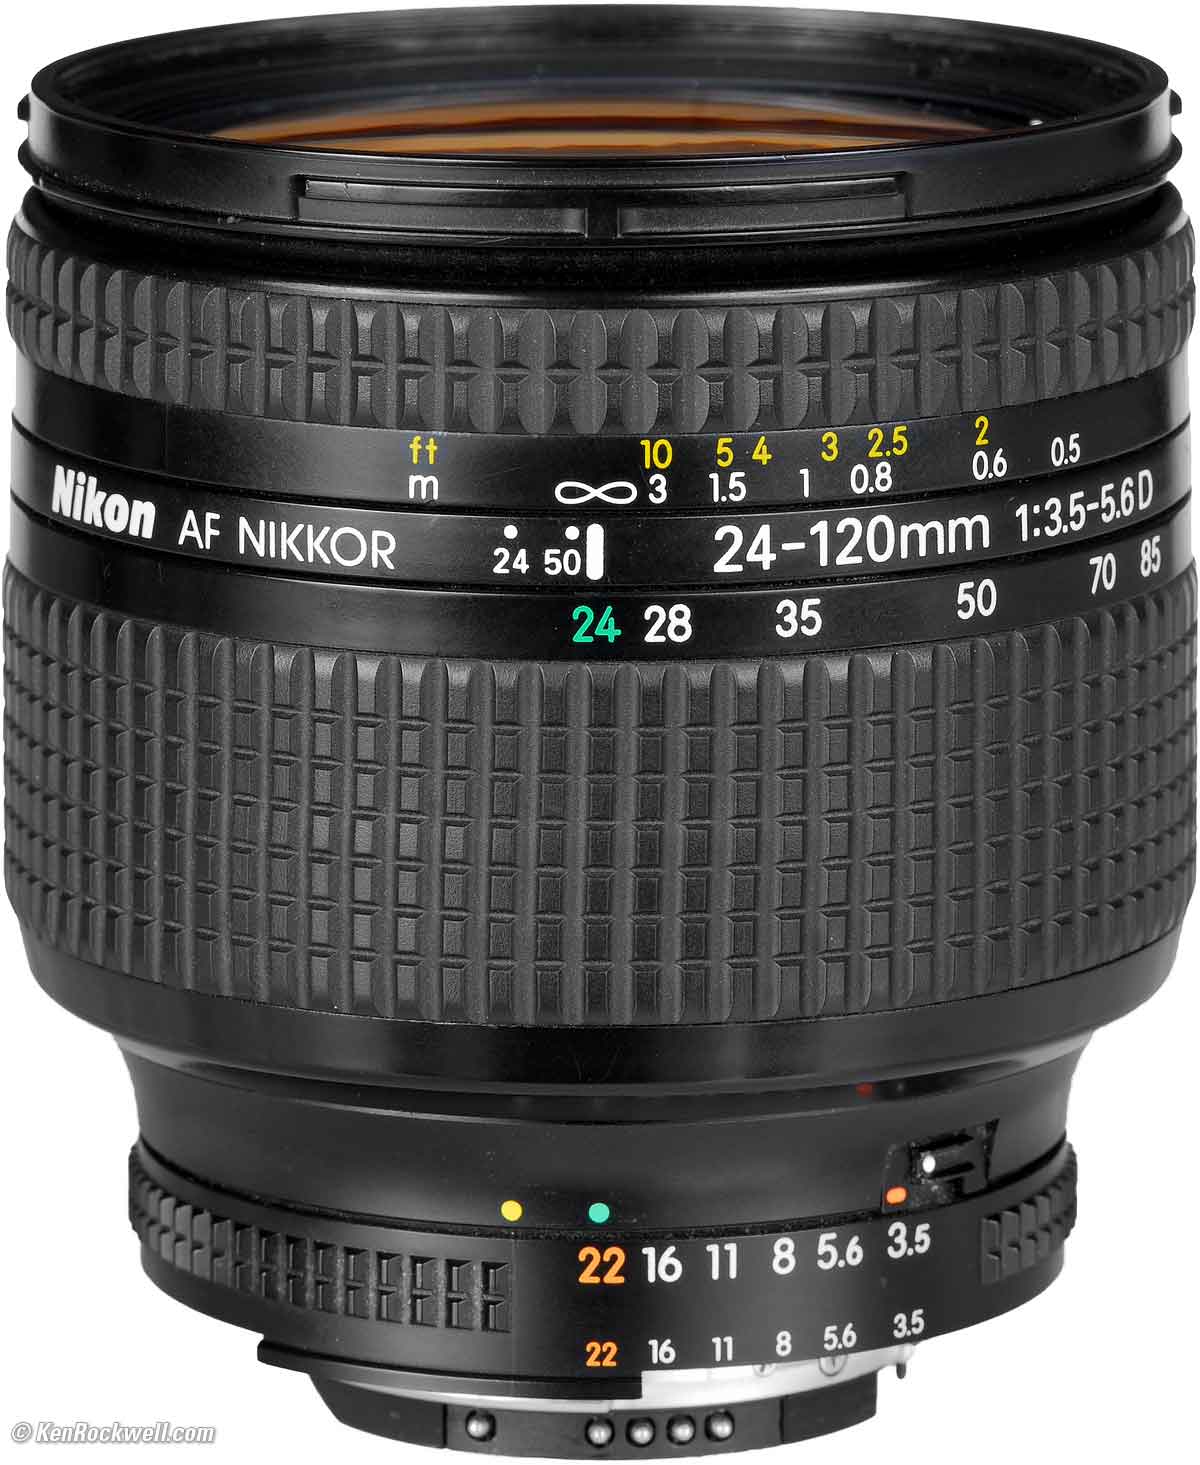 人気 ニコン Ai Af 24-120mm/F3.5-5.6D Nikkor レンズ(ズーム 